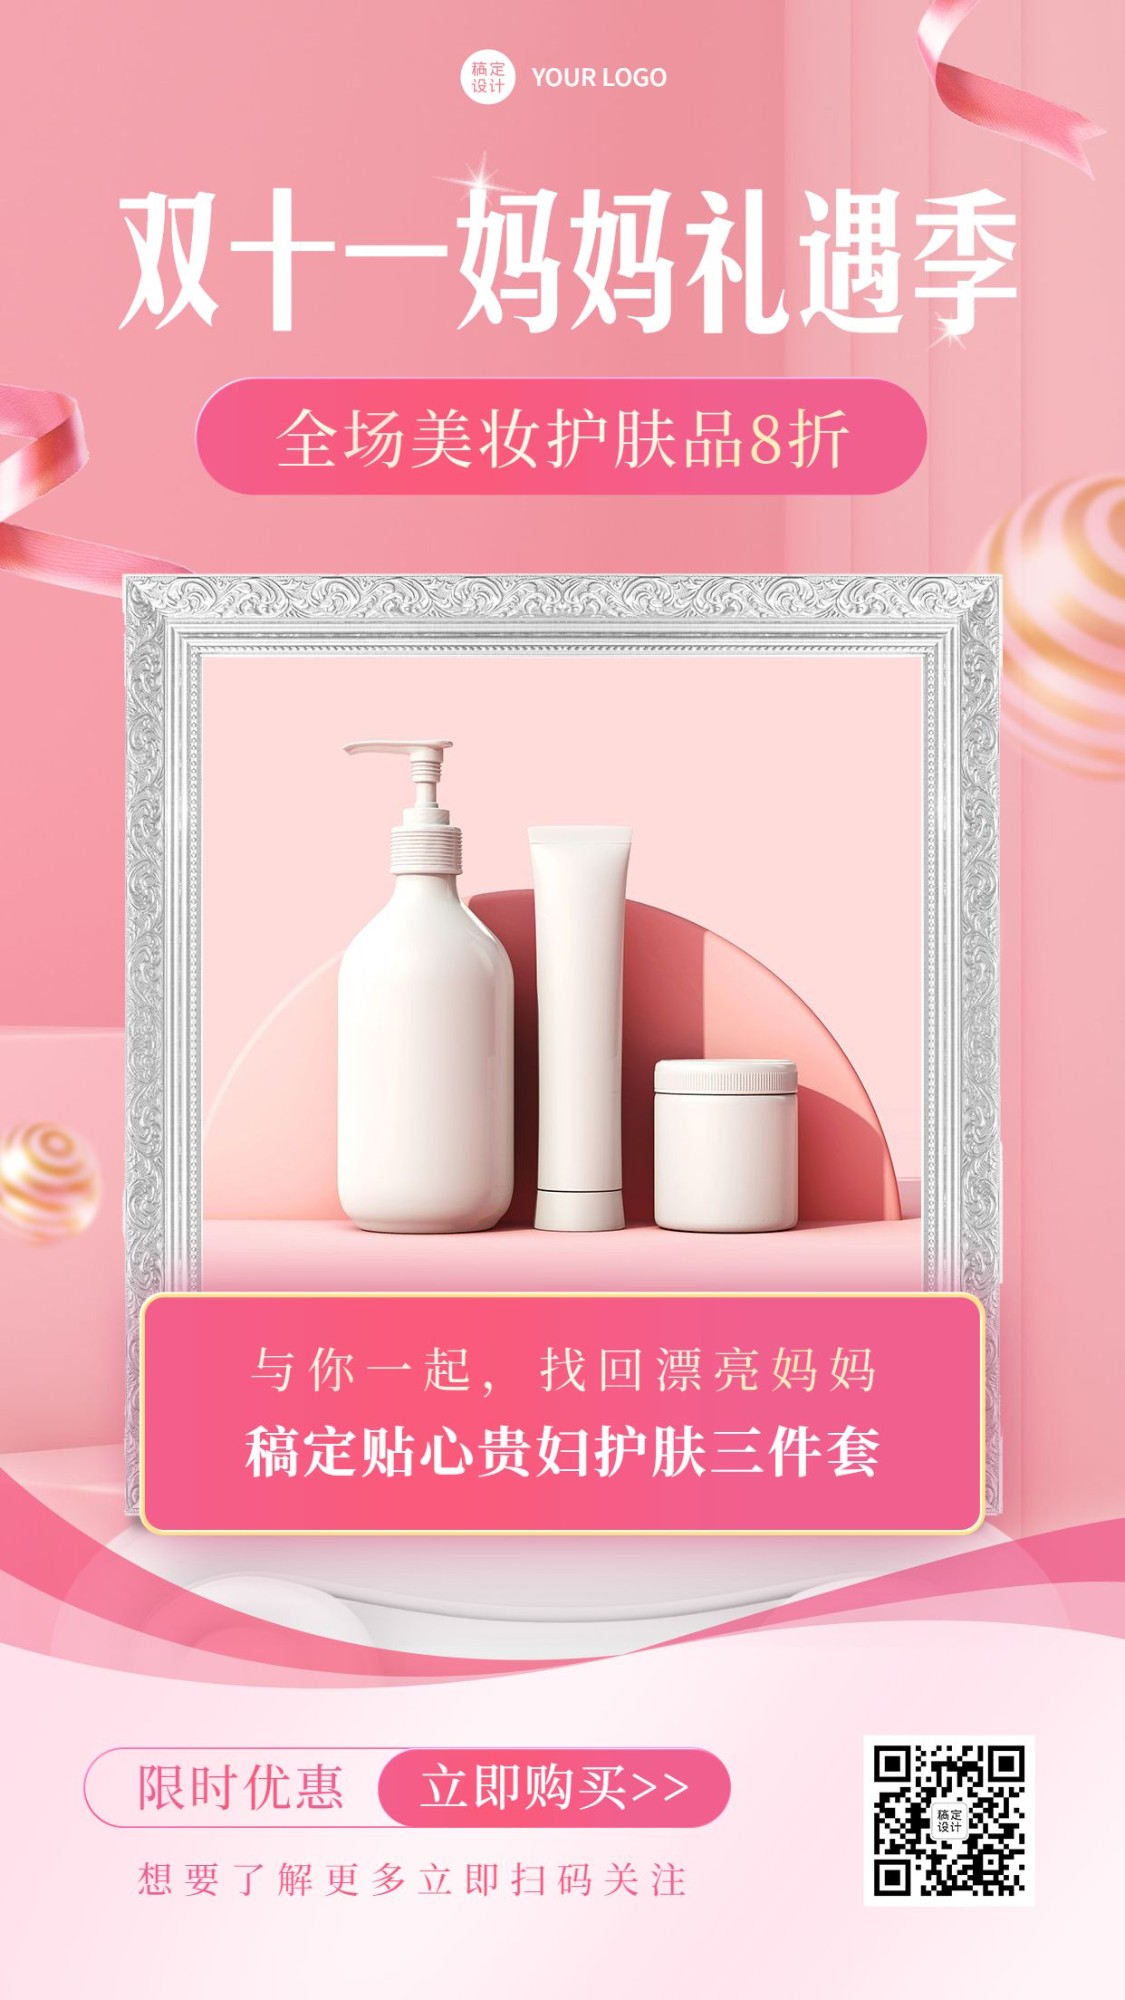 双十一节日营销美妆护肤产品展示海报